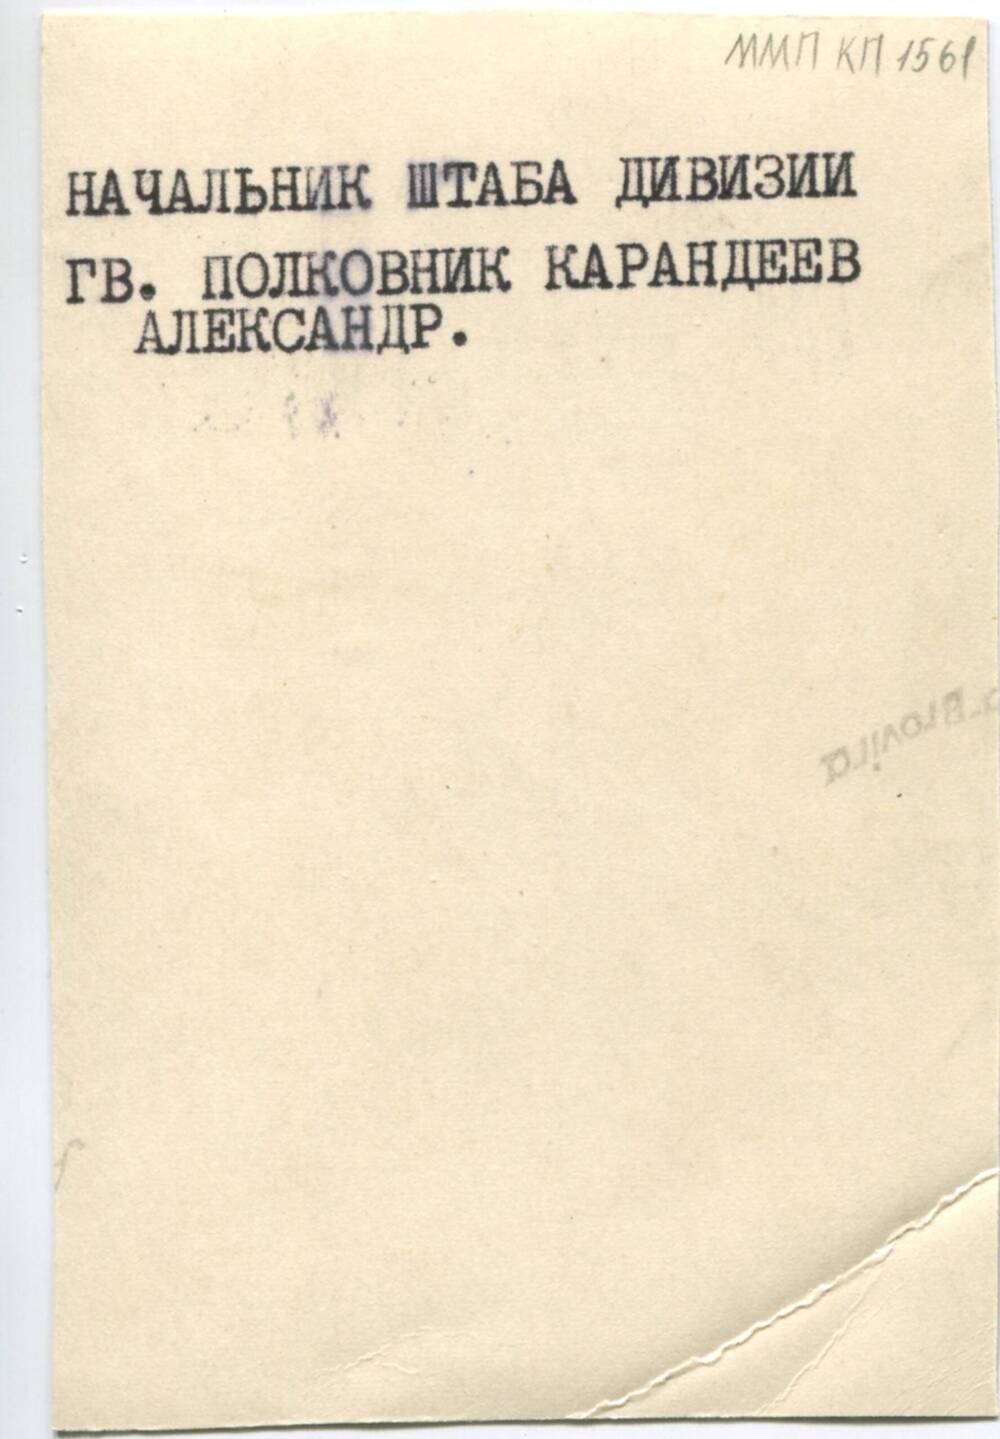 Фотография. Гв. полковник Карадеев А., начальника штаба дивизии. 1945-1946 гг.